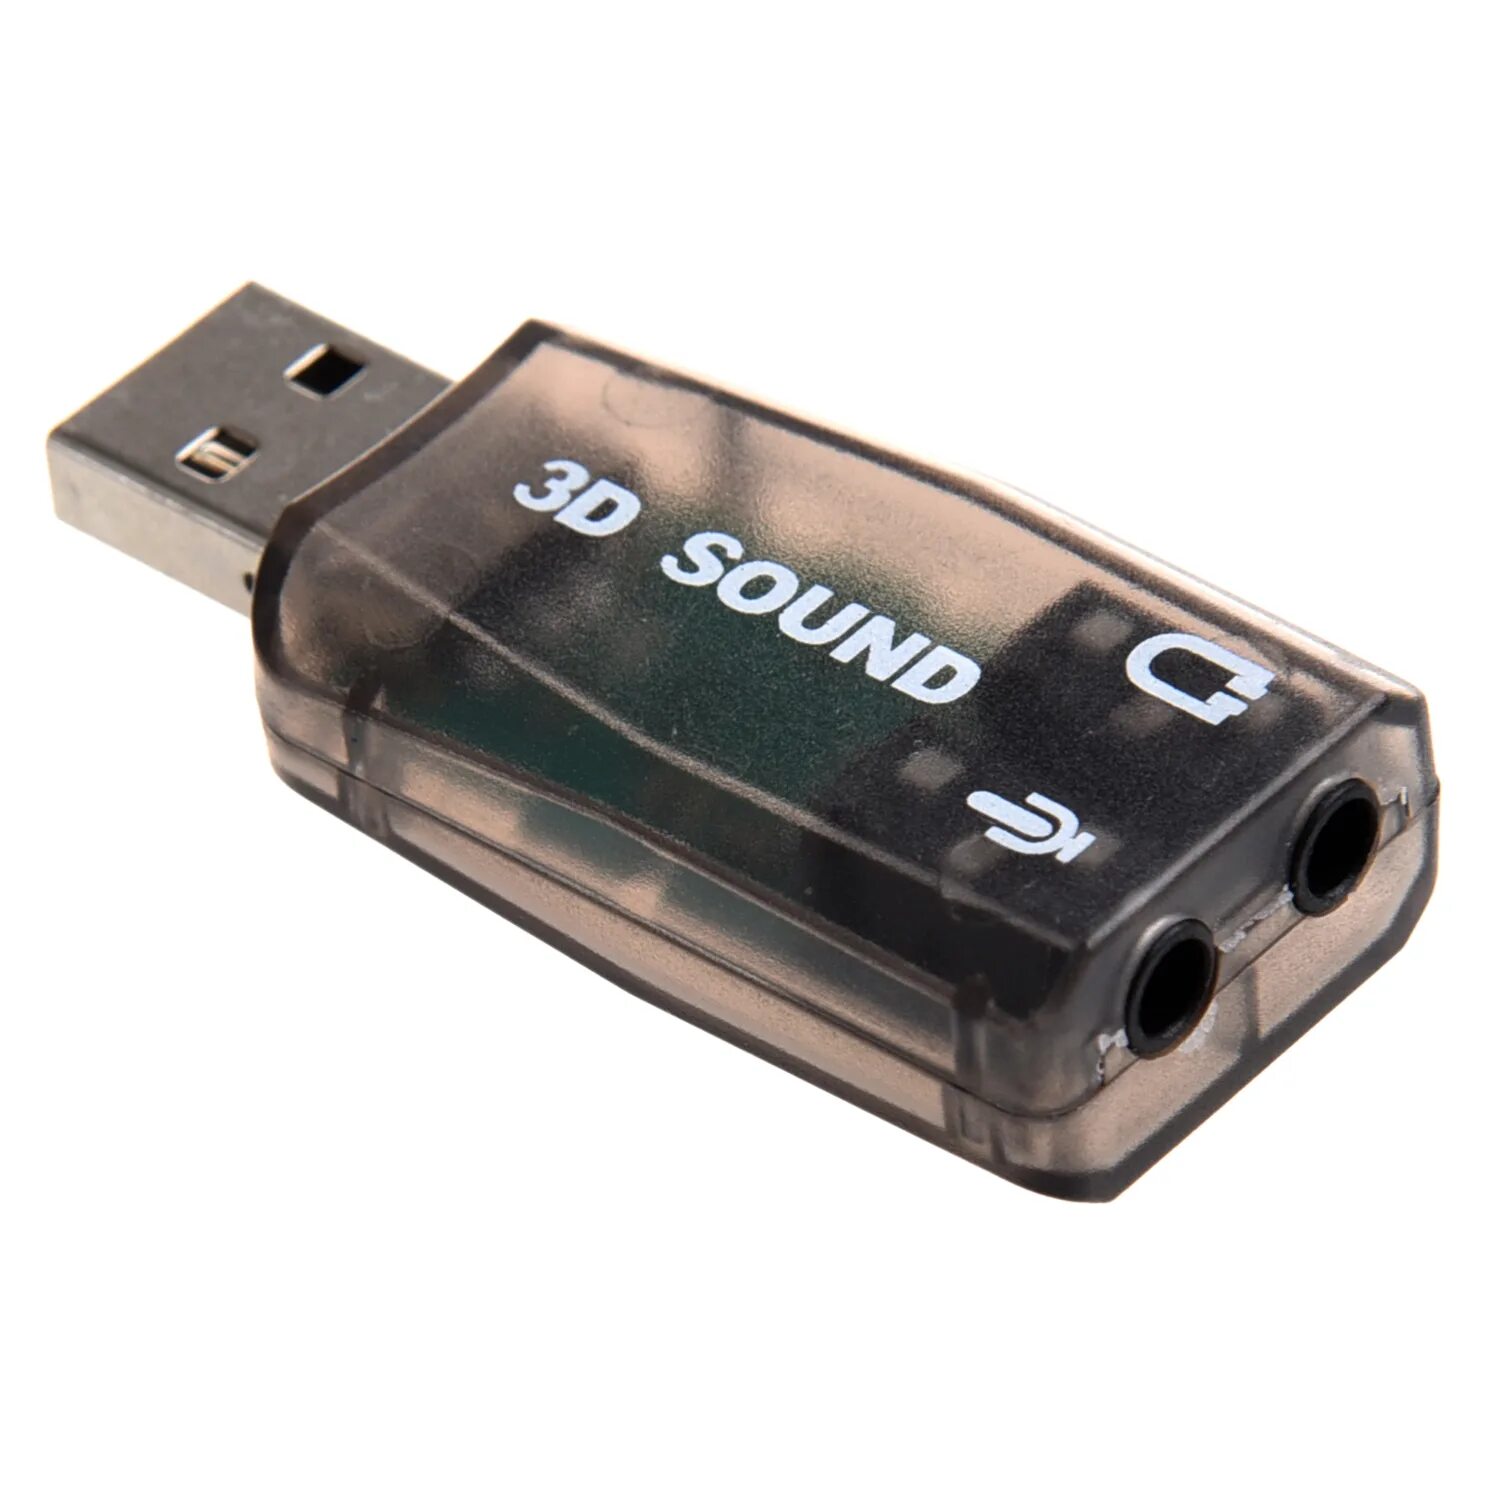 Звуковая карта usb купить. USB 3d Sound Card (c-Media cm108). Адаптер USB звуковая карта 3d Sound. Звуковая карта "USB trua3d". Внешняя звуковая карта DEXP 3d.